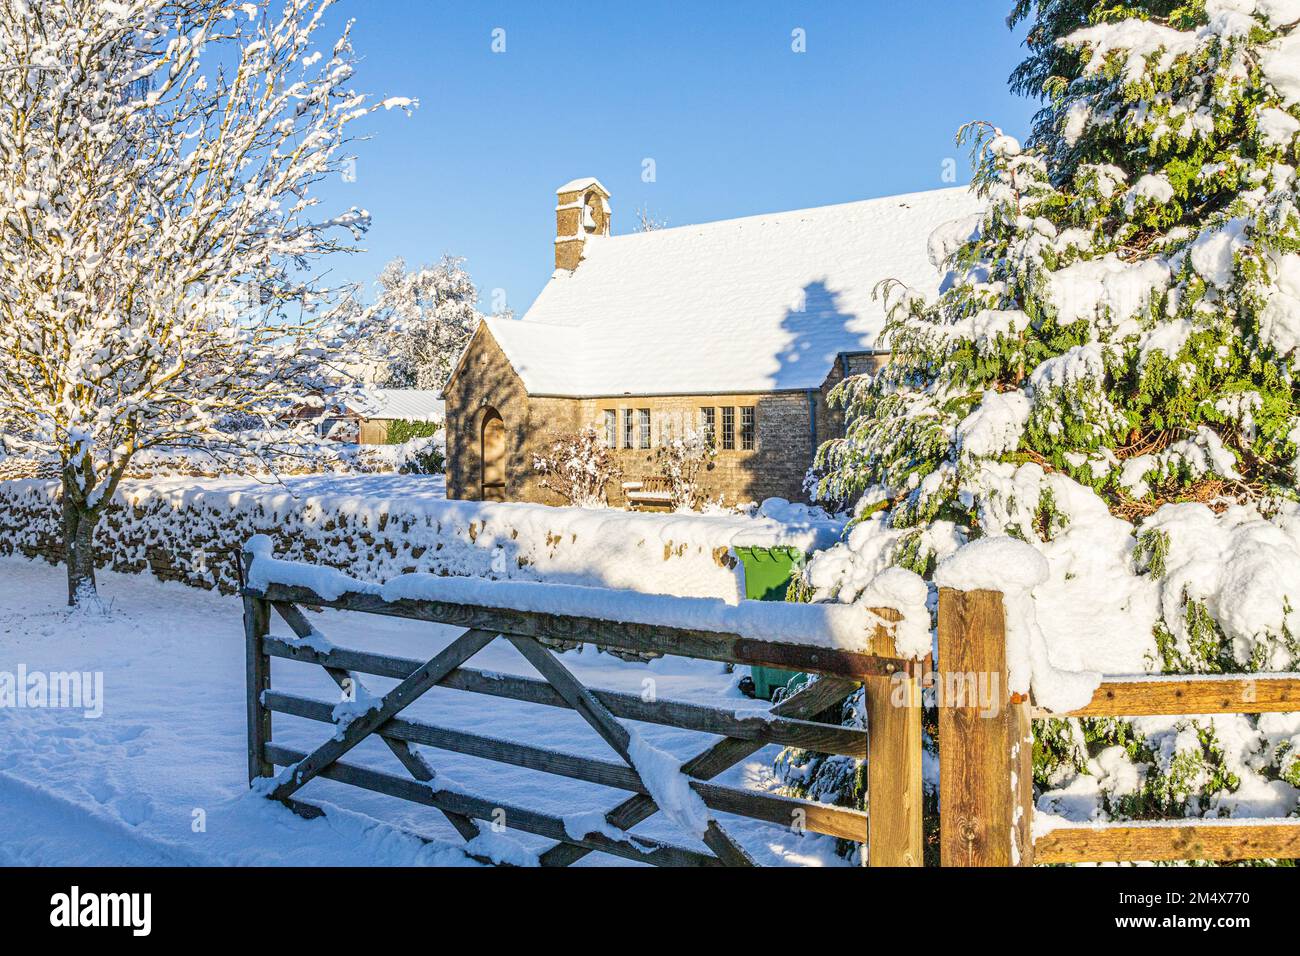 Début de l'hiver neige sur la petite église en pierre de St Mary à Hamlet (construite en 1958) dans le village de Cotswold de Birdlip, Gloucestershire, Angleterre Royaume-Uni Banque D'Images